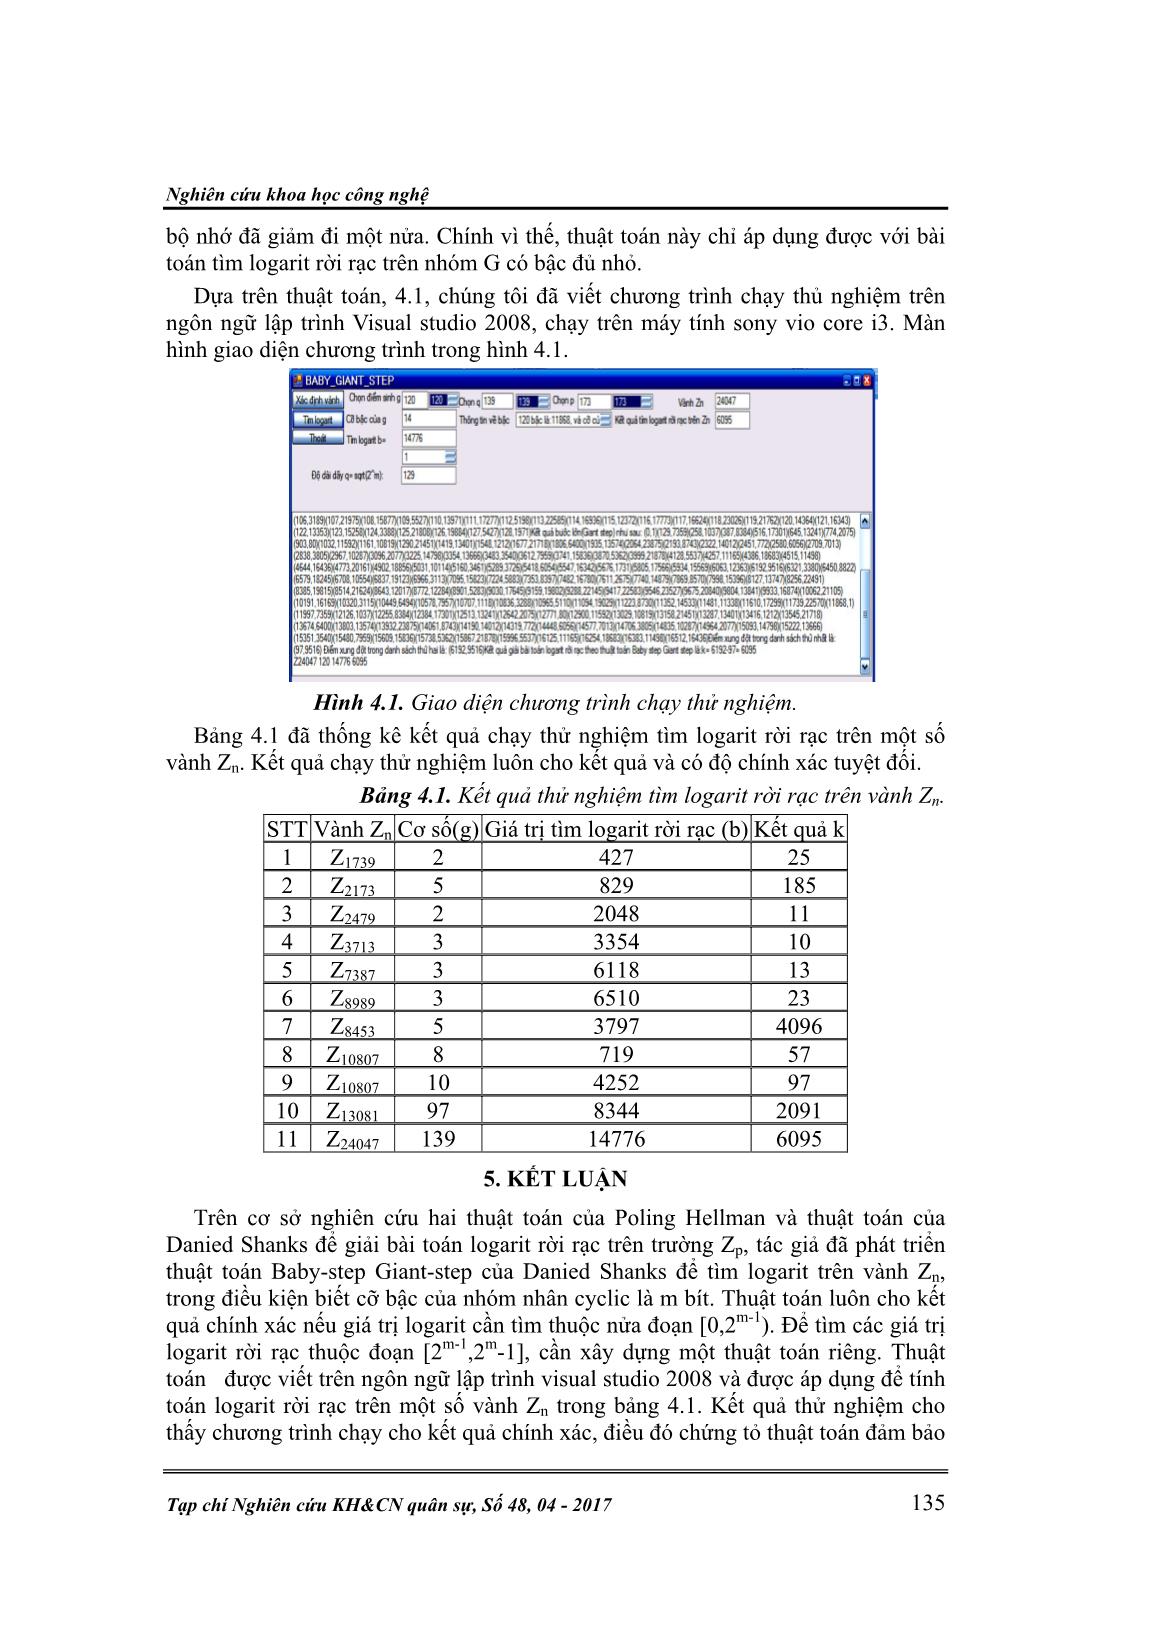 Phát triển thuật toán của Danied Shank để giải bài toán Logarit rời rạc trên vành Zn trang 7